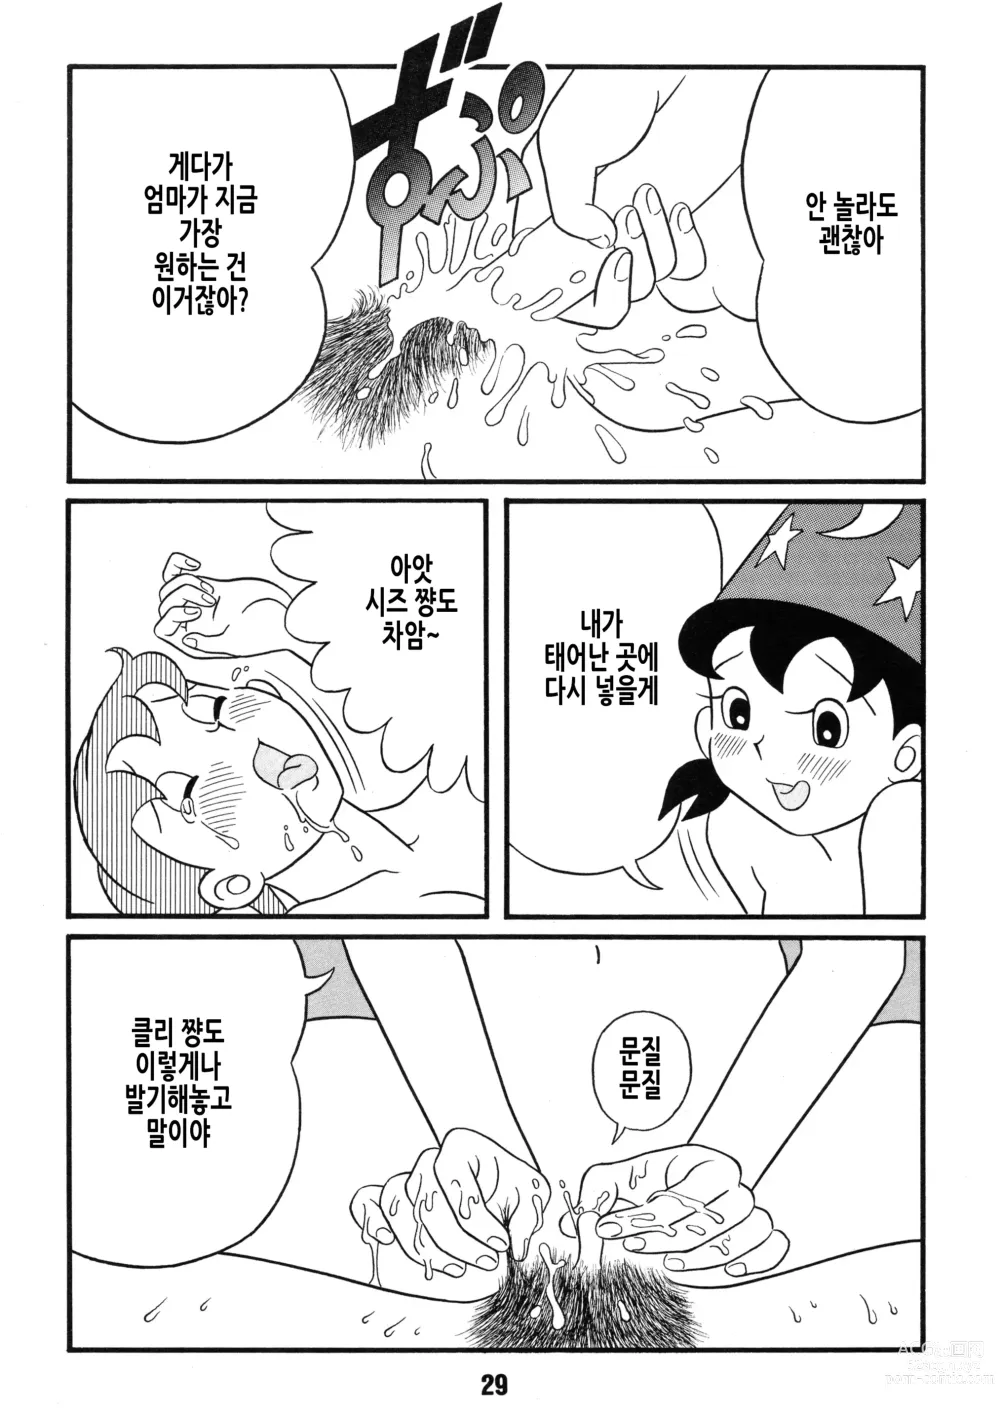 Page 30 of doujinshi Chonchorin